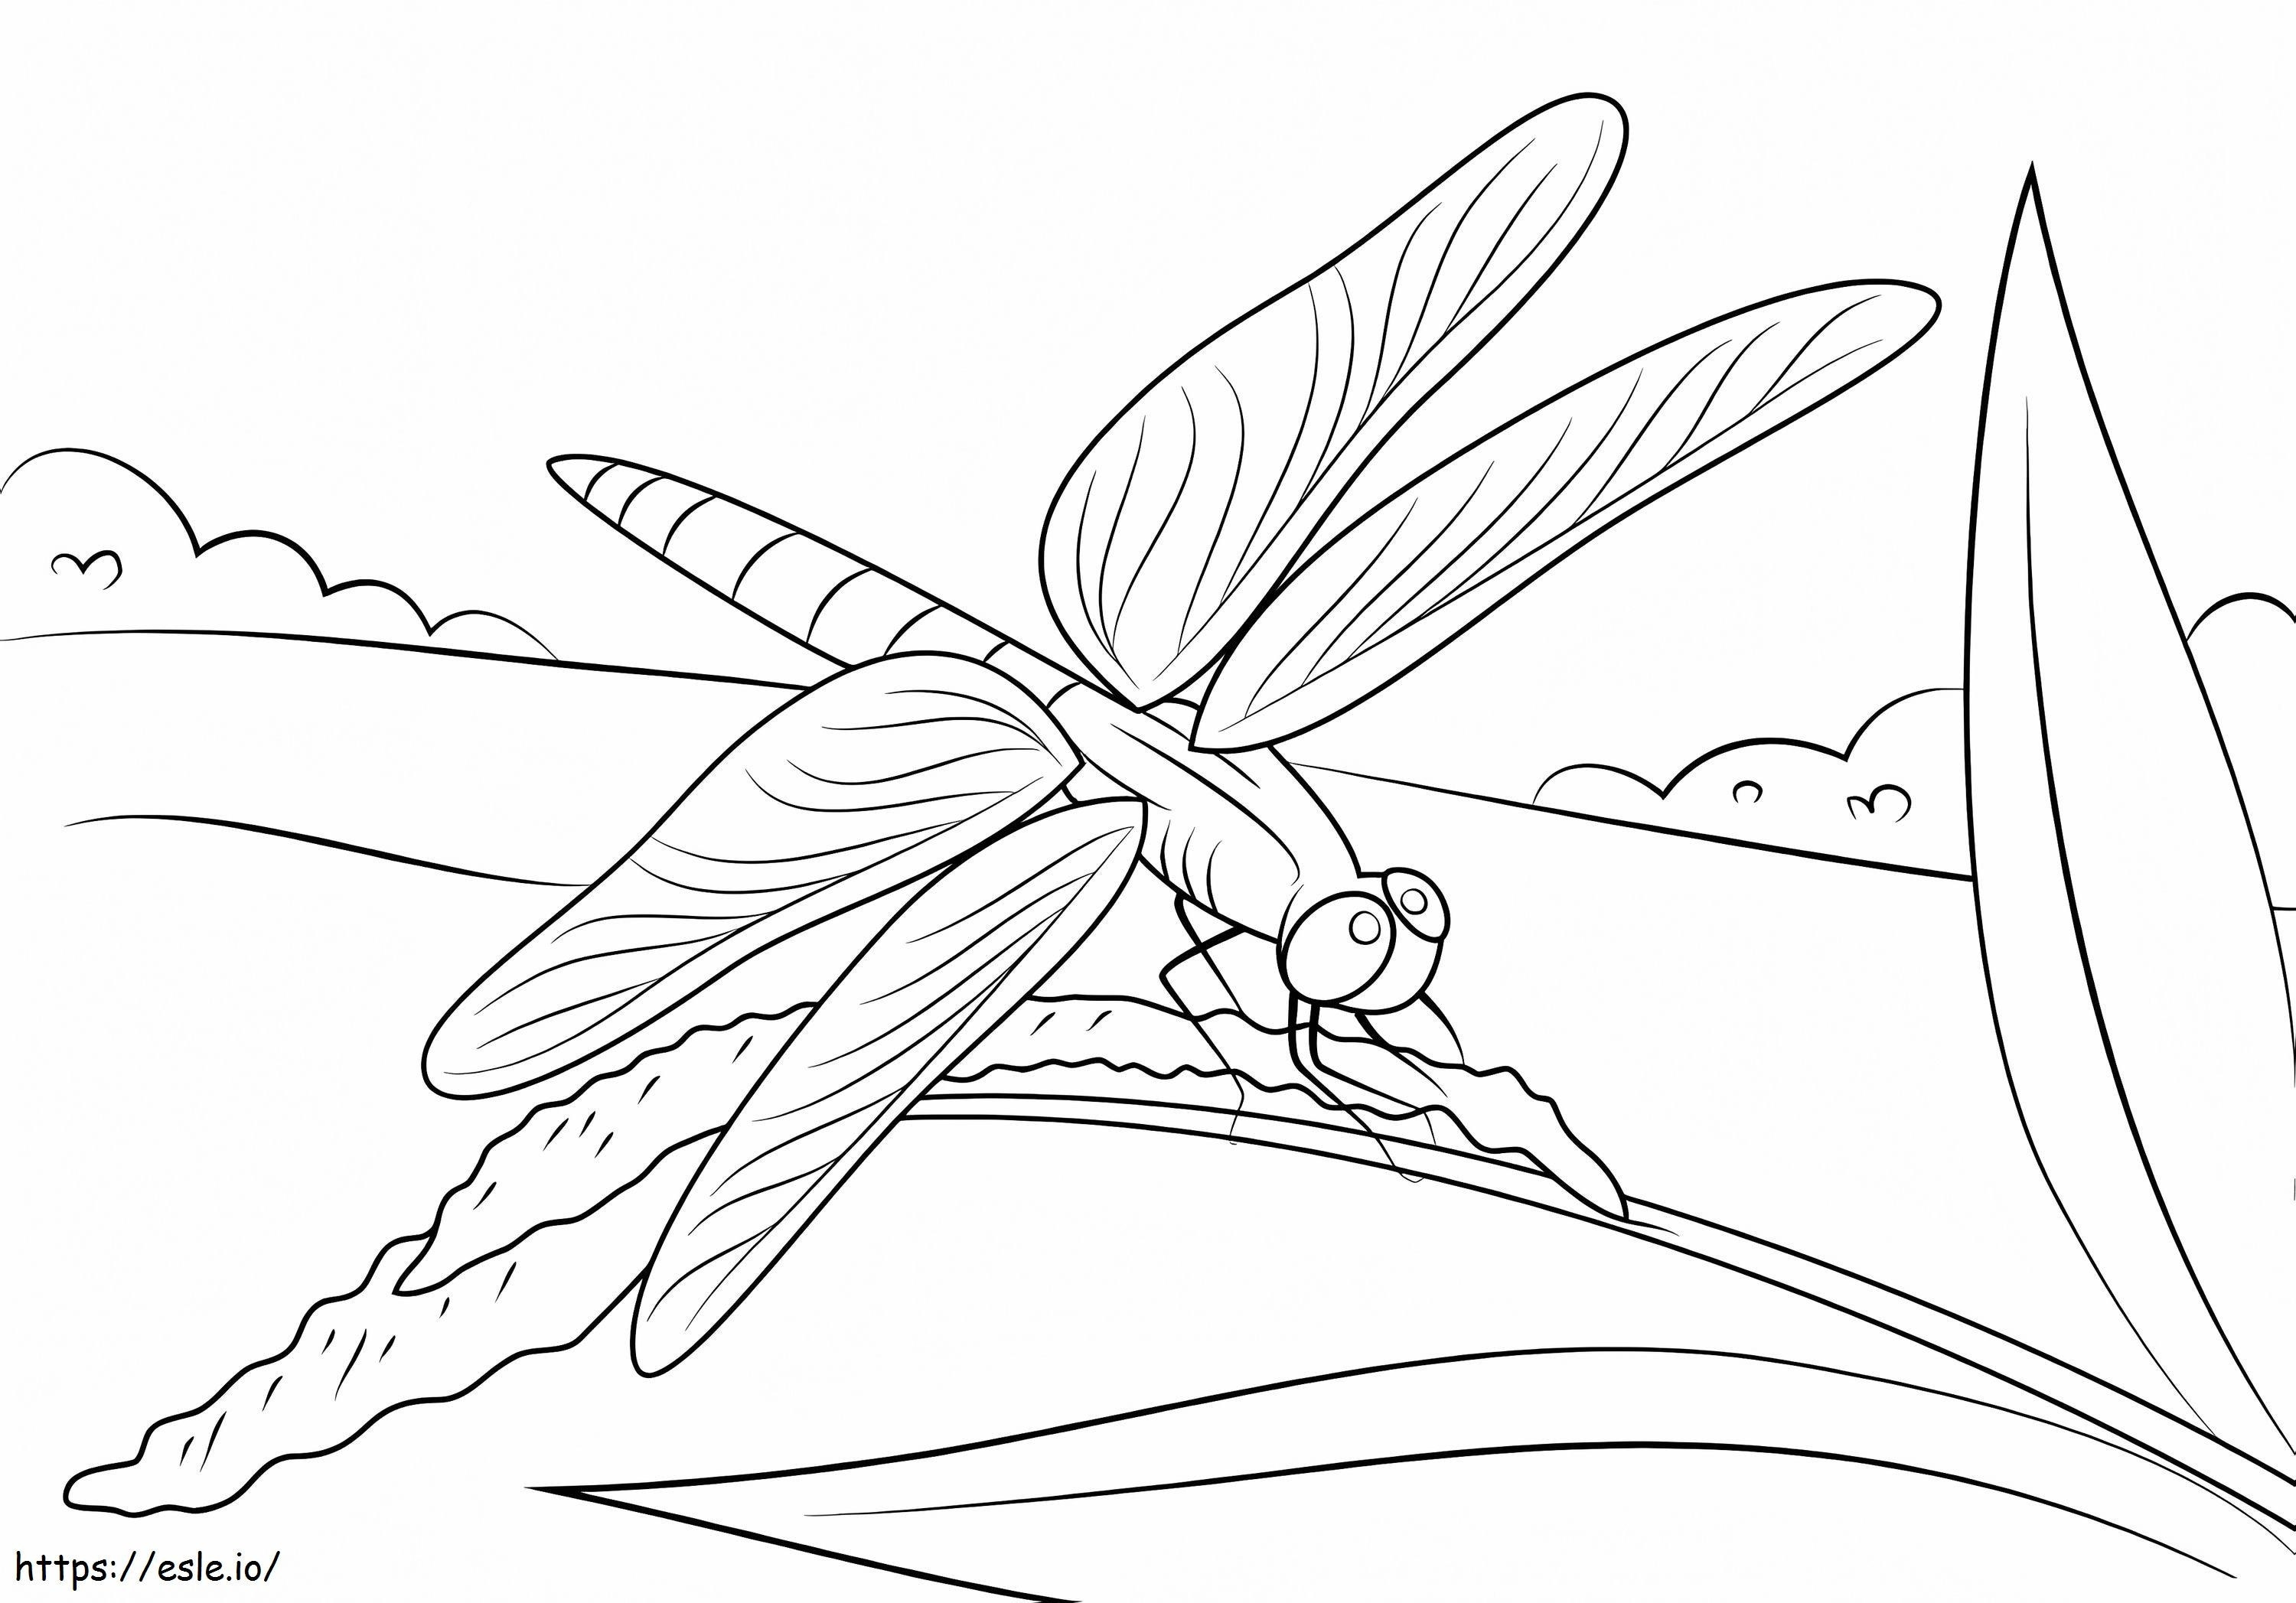 La libellula si siede sul gambo da colorare